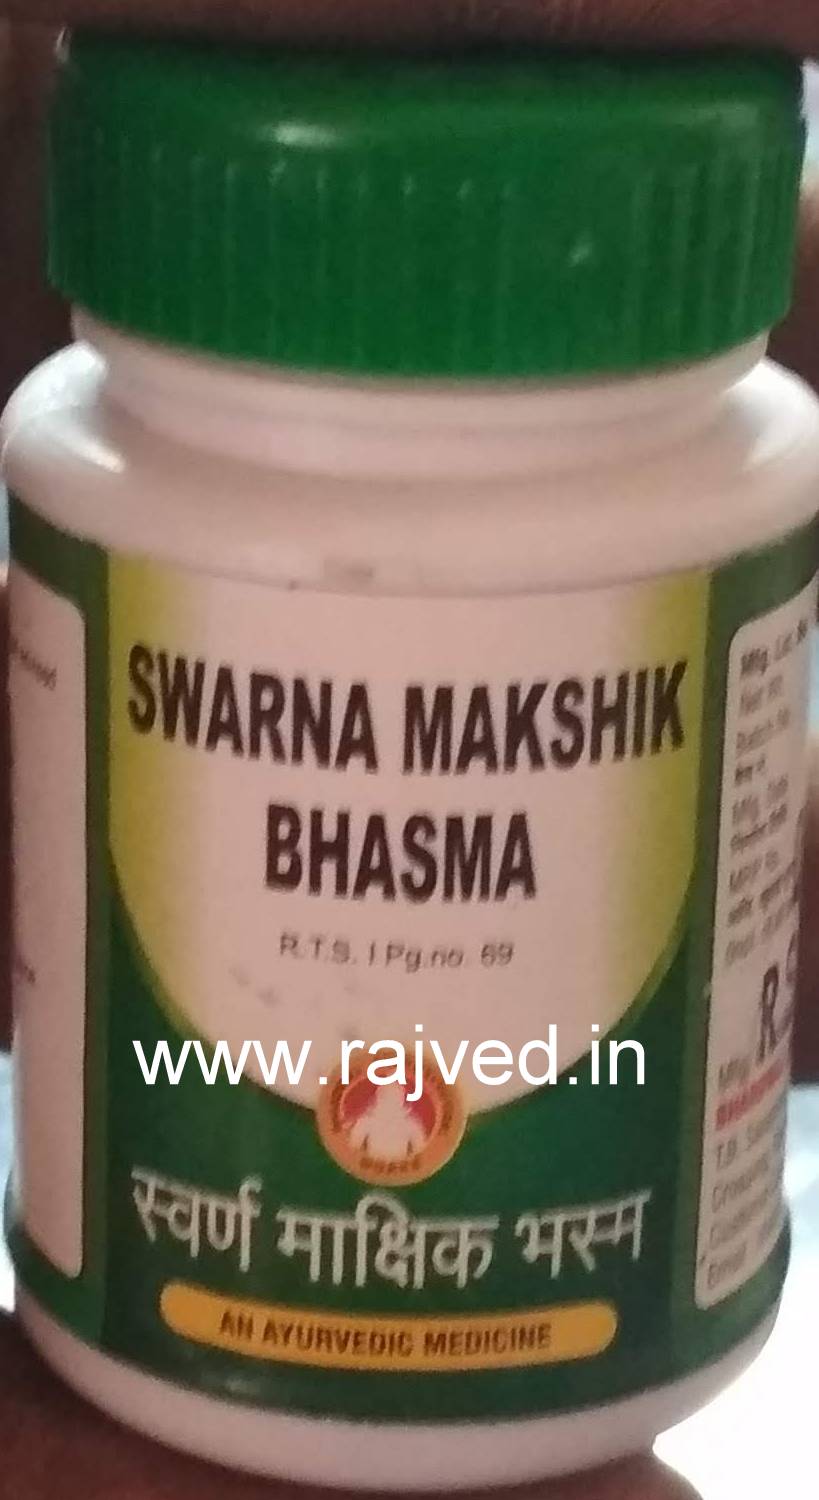 swarna makshik bhasma 1kg upto 15% off bharadwaj pharma indore